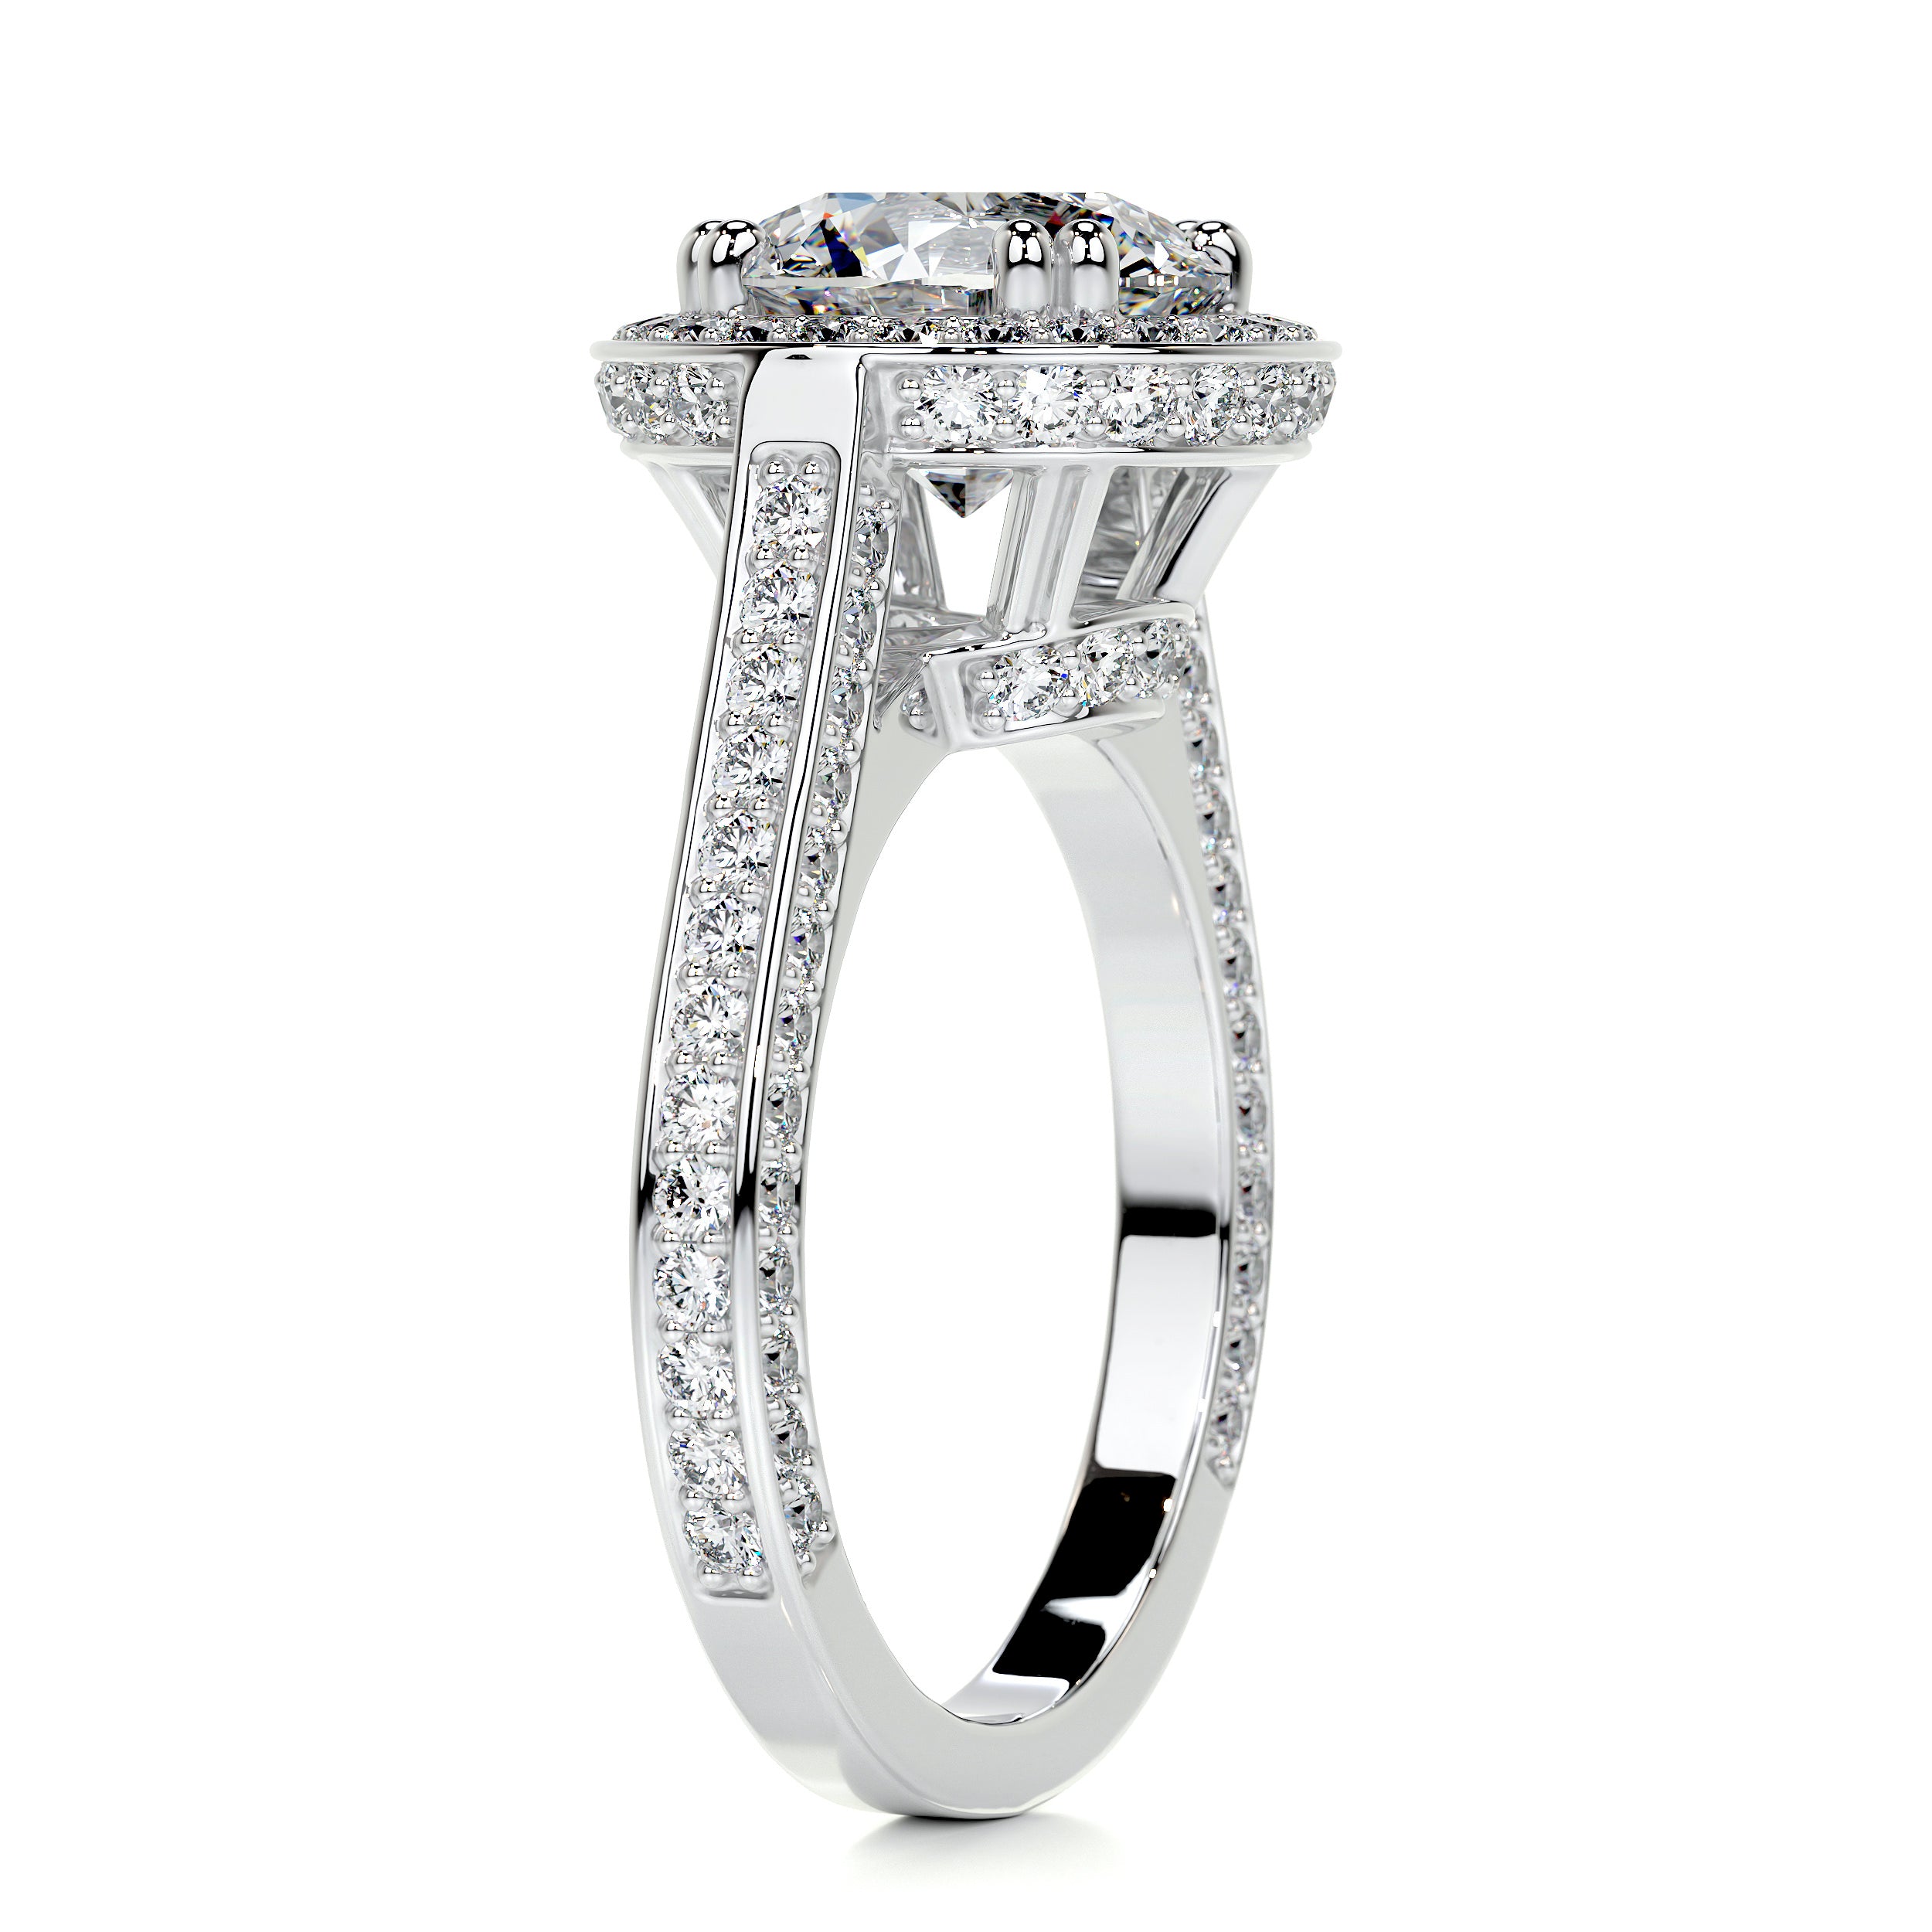 Lynn Diamond Engagement Ring -14K White Gold